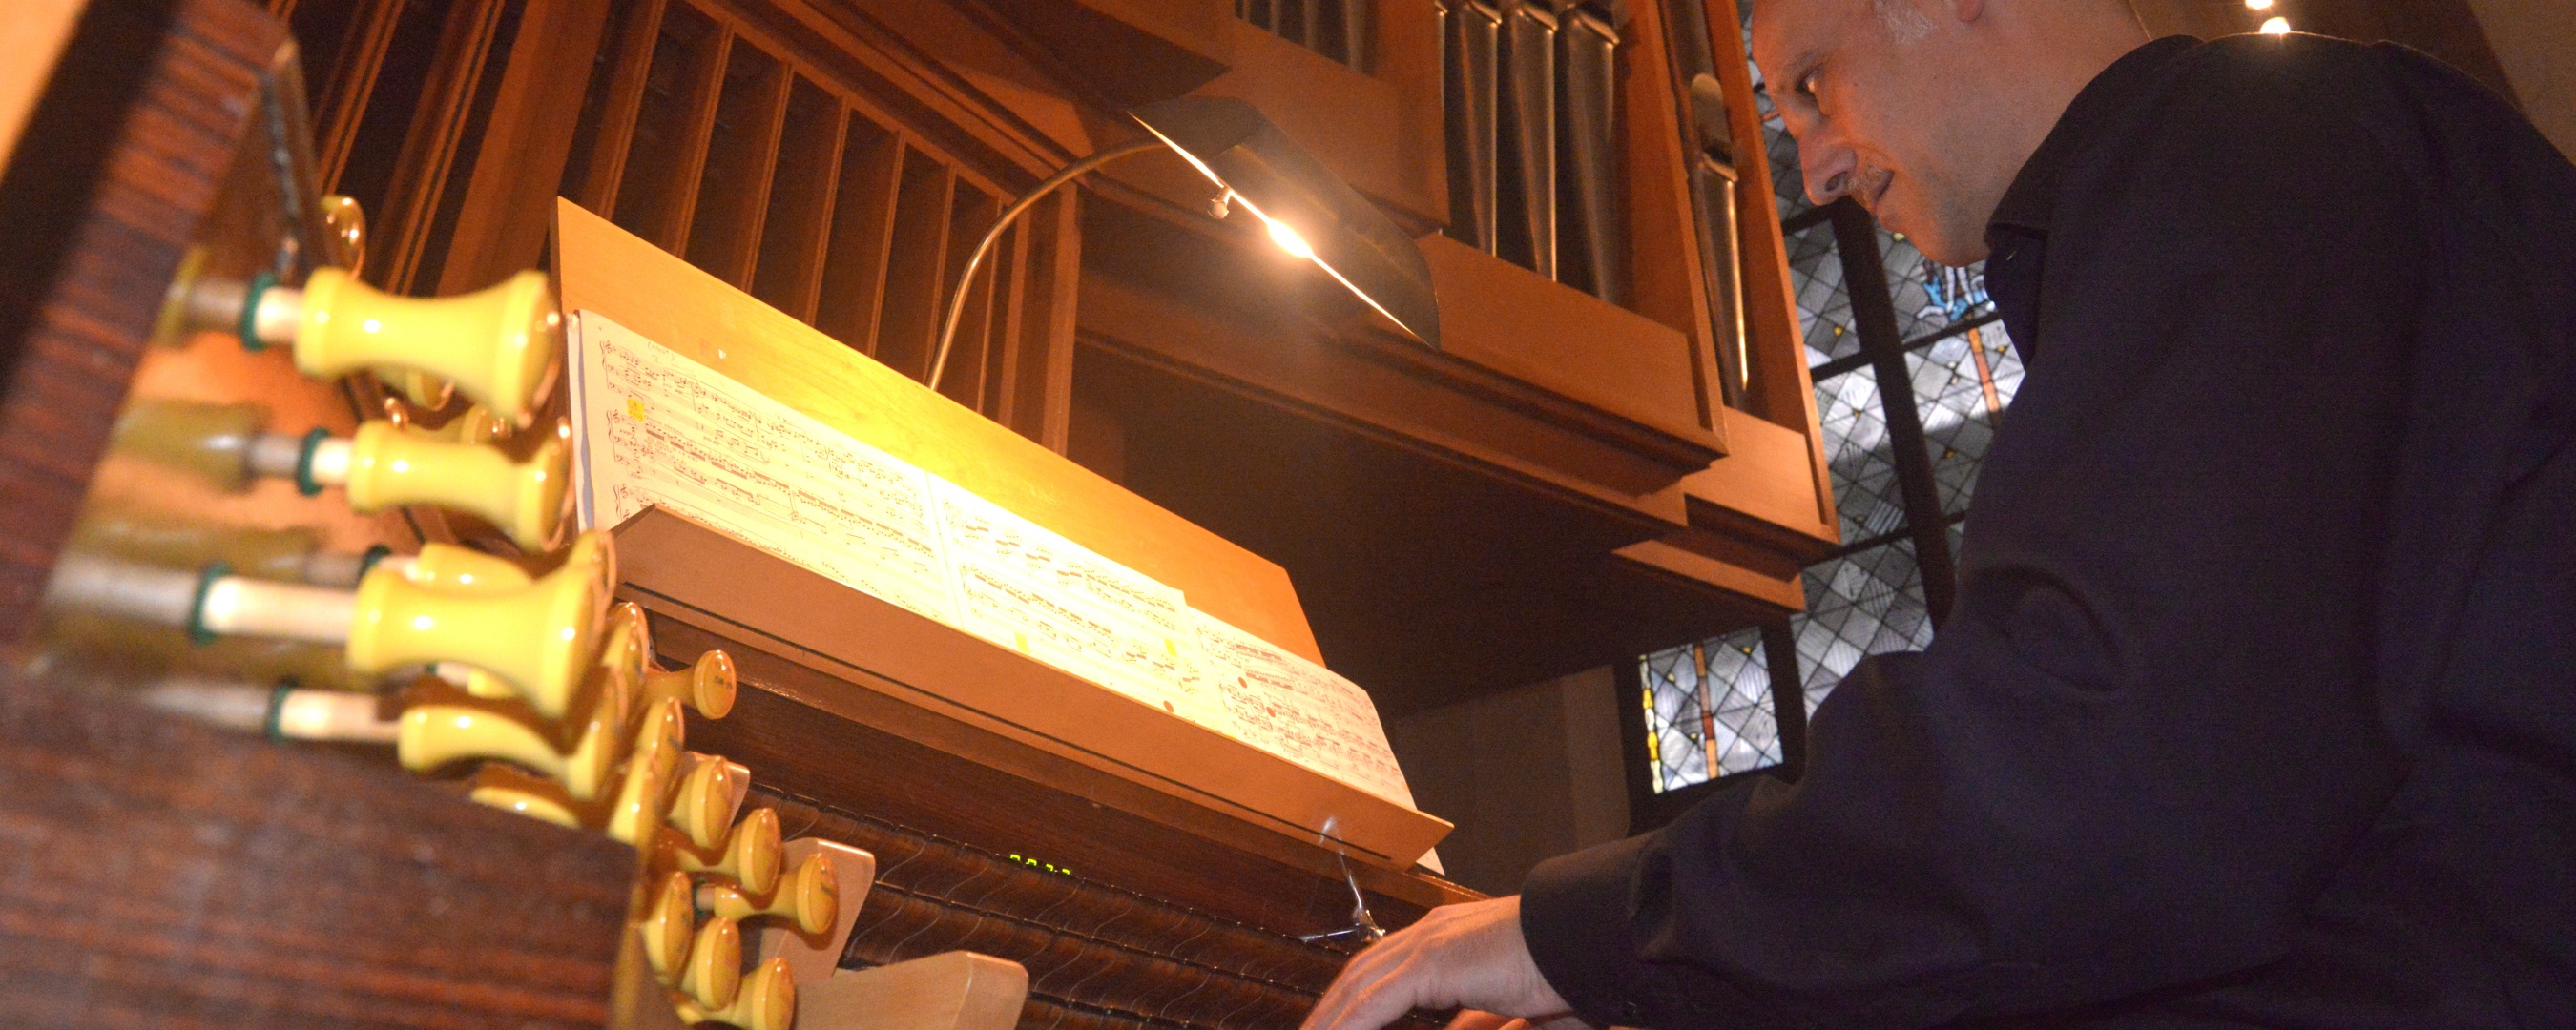 Orgelkonzert | Andreas Köhs an der Schuke-Orgel der Dreikönigskirche Frankfurt am Main